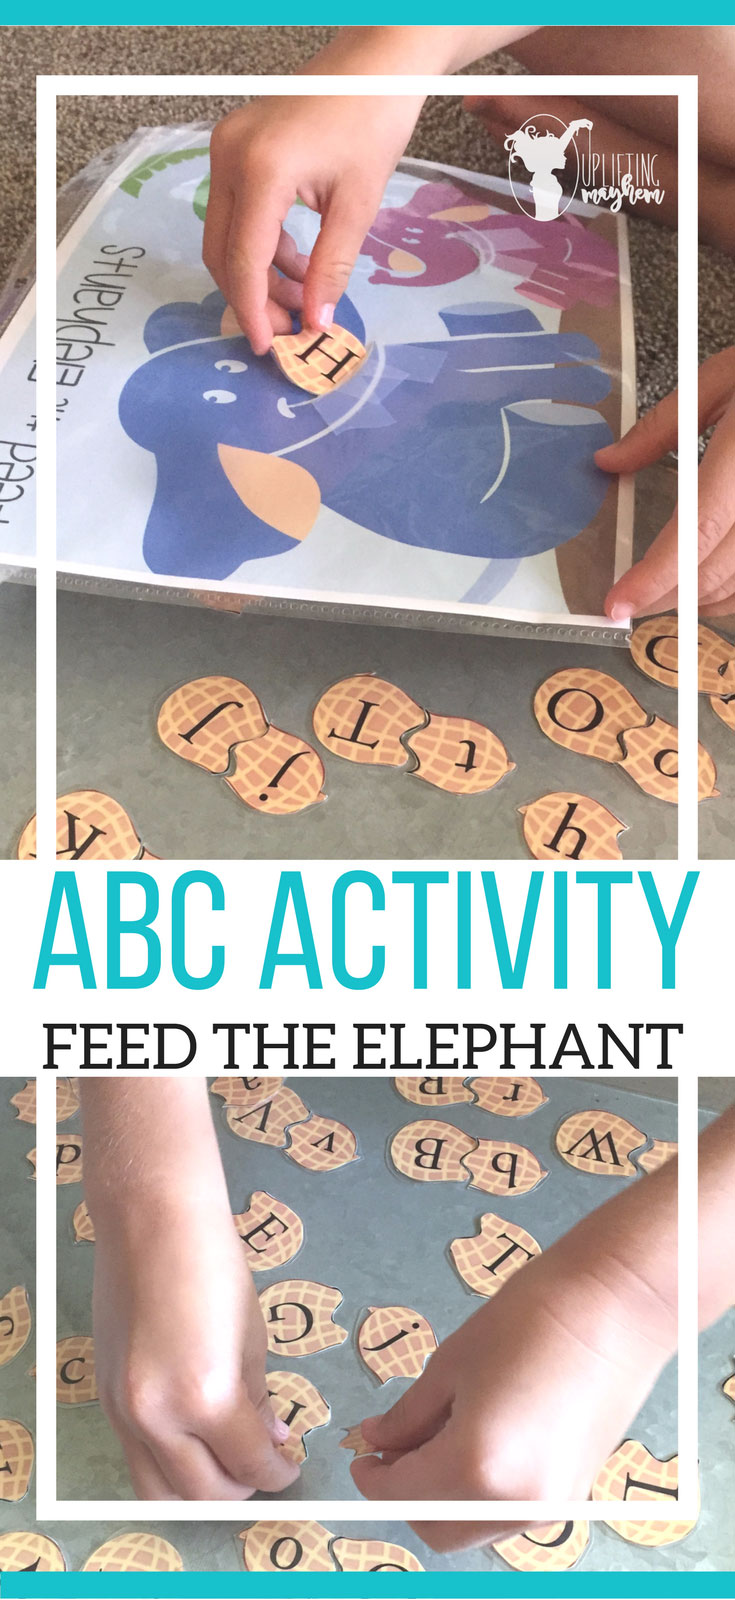 ABC Activity, Feed the Elephant